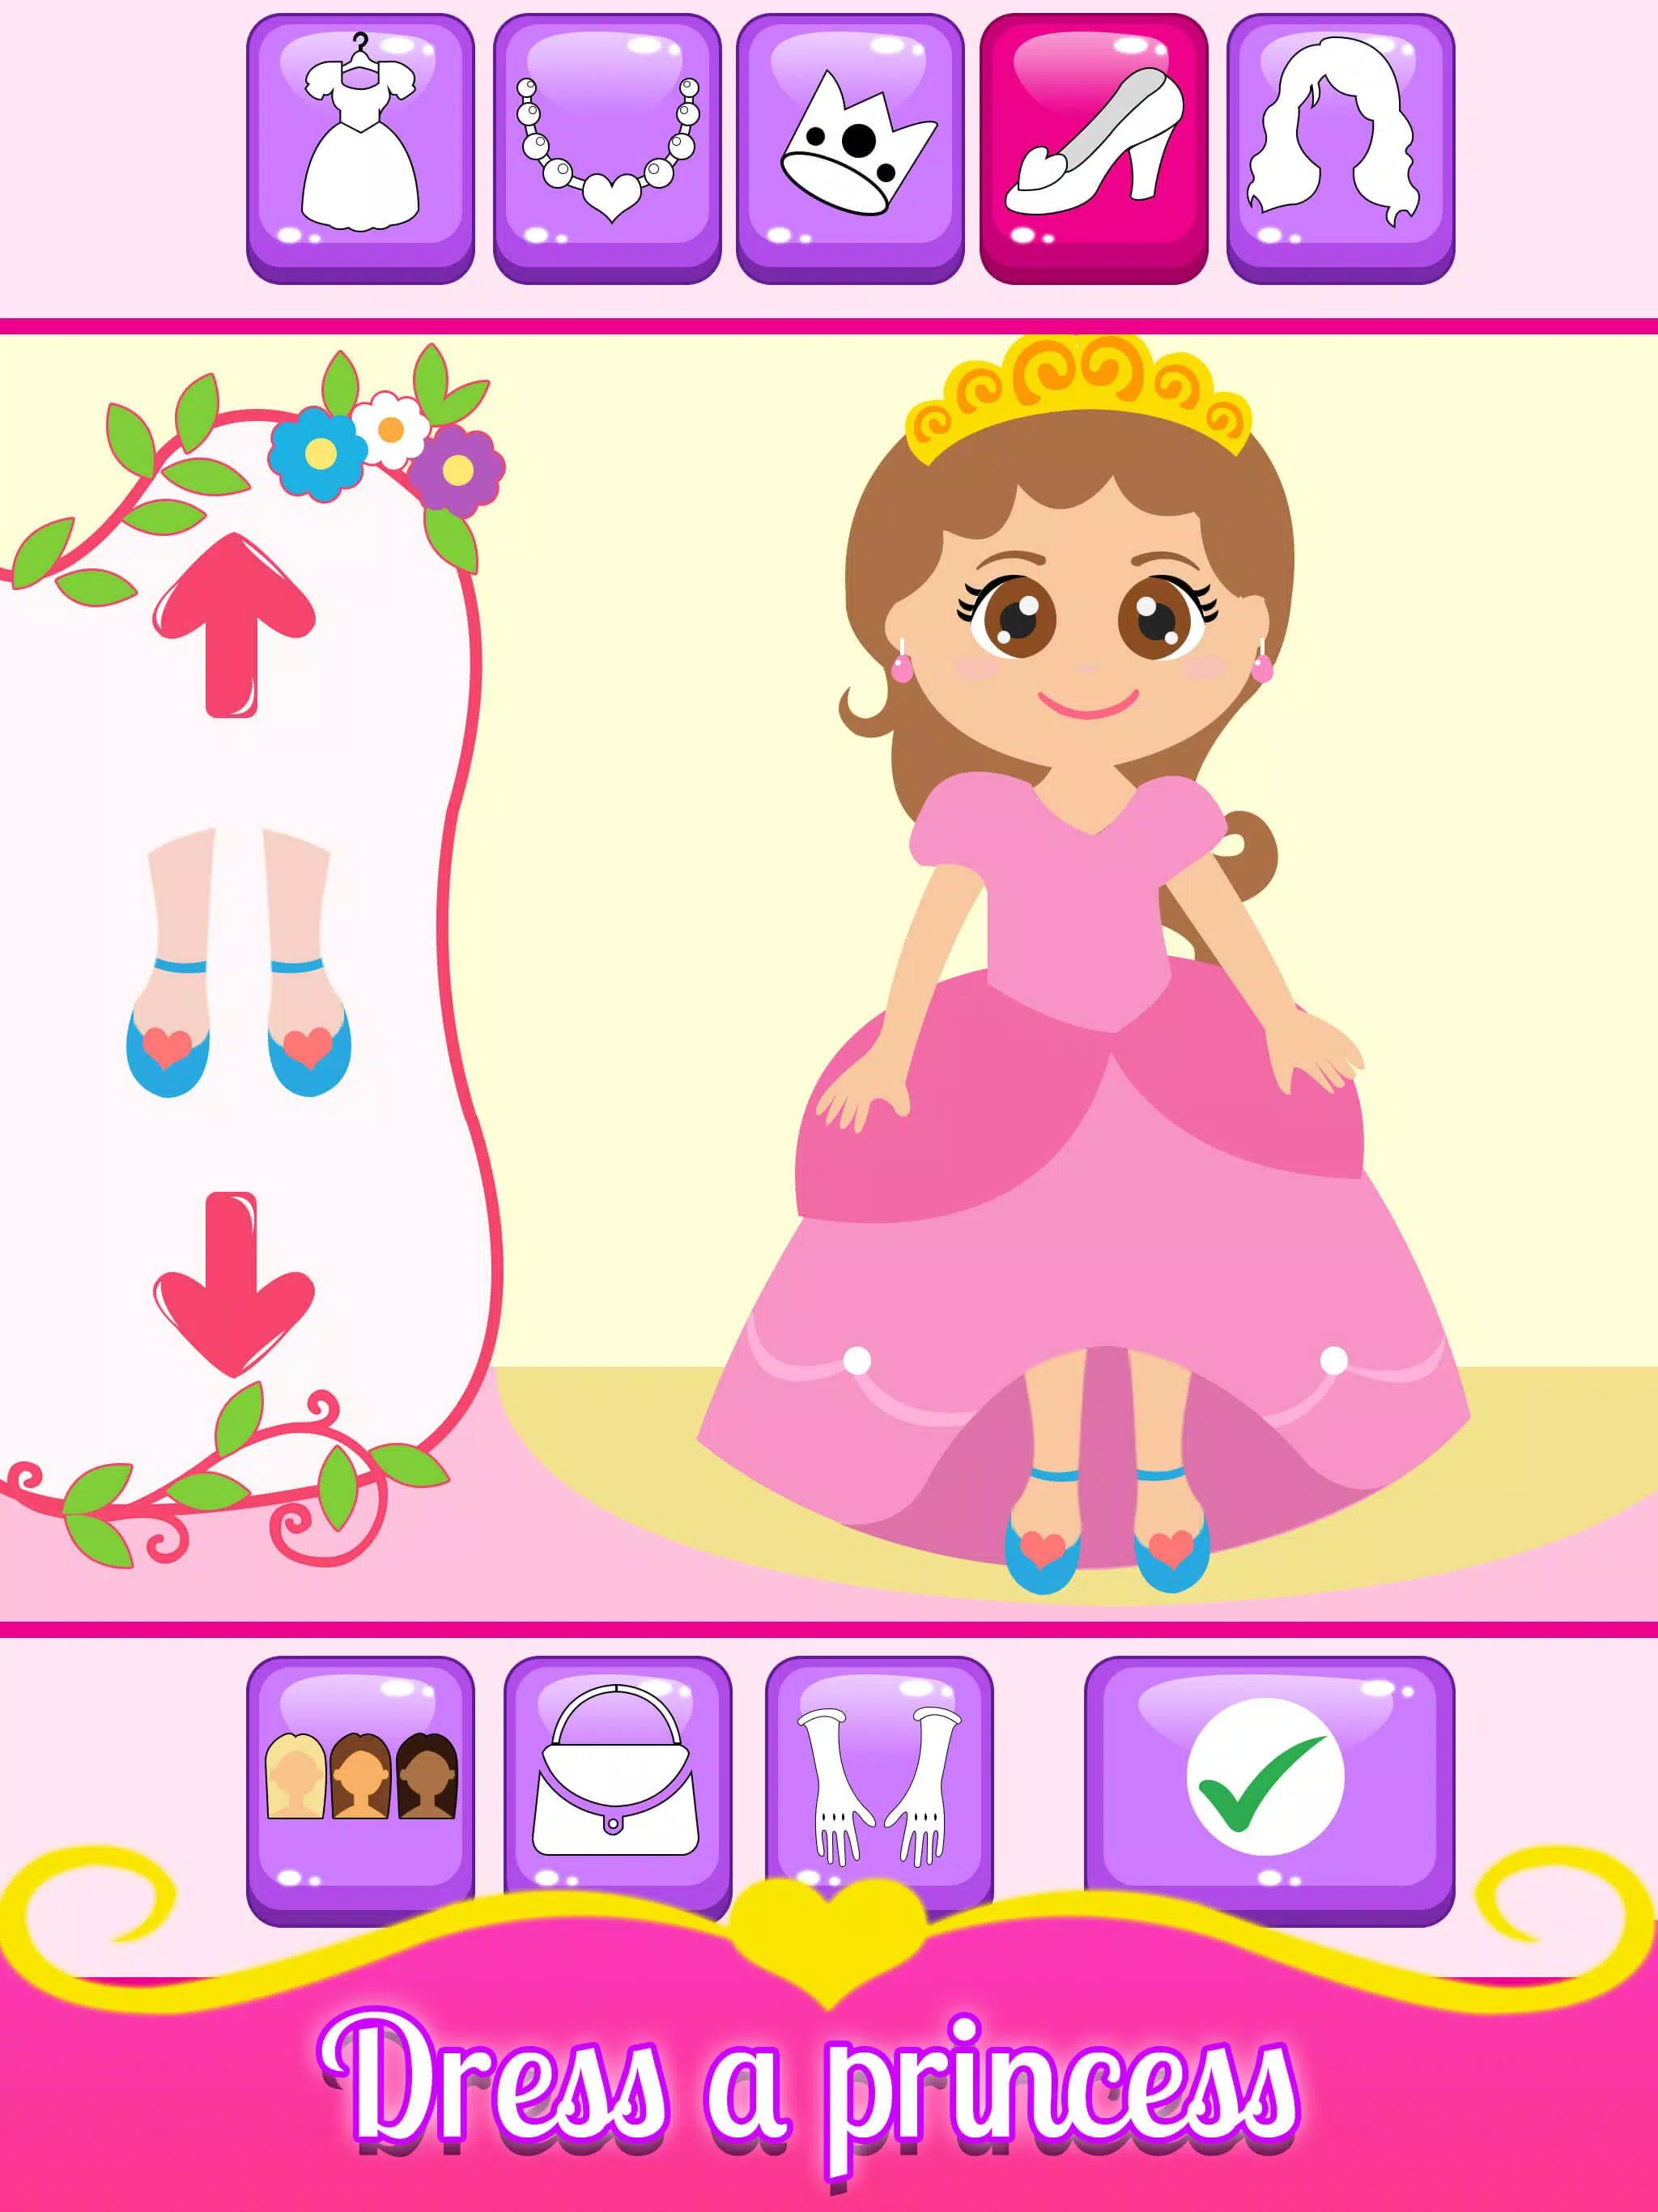 Download do APK de Princesa Grávida Mamãe E bebê para Android